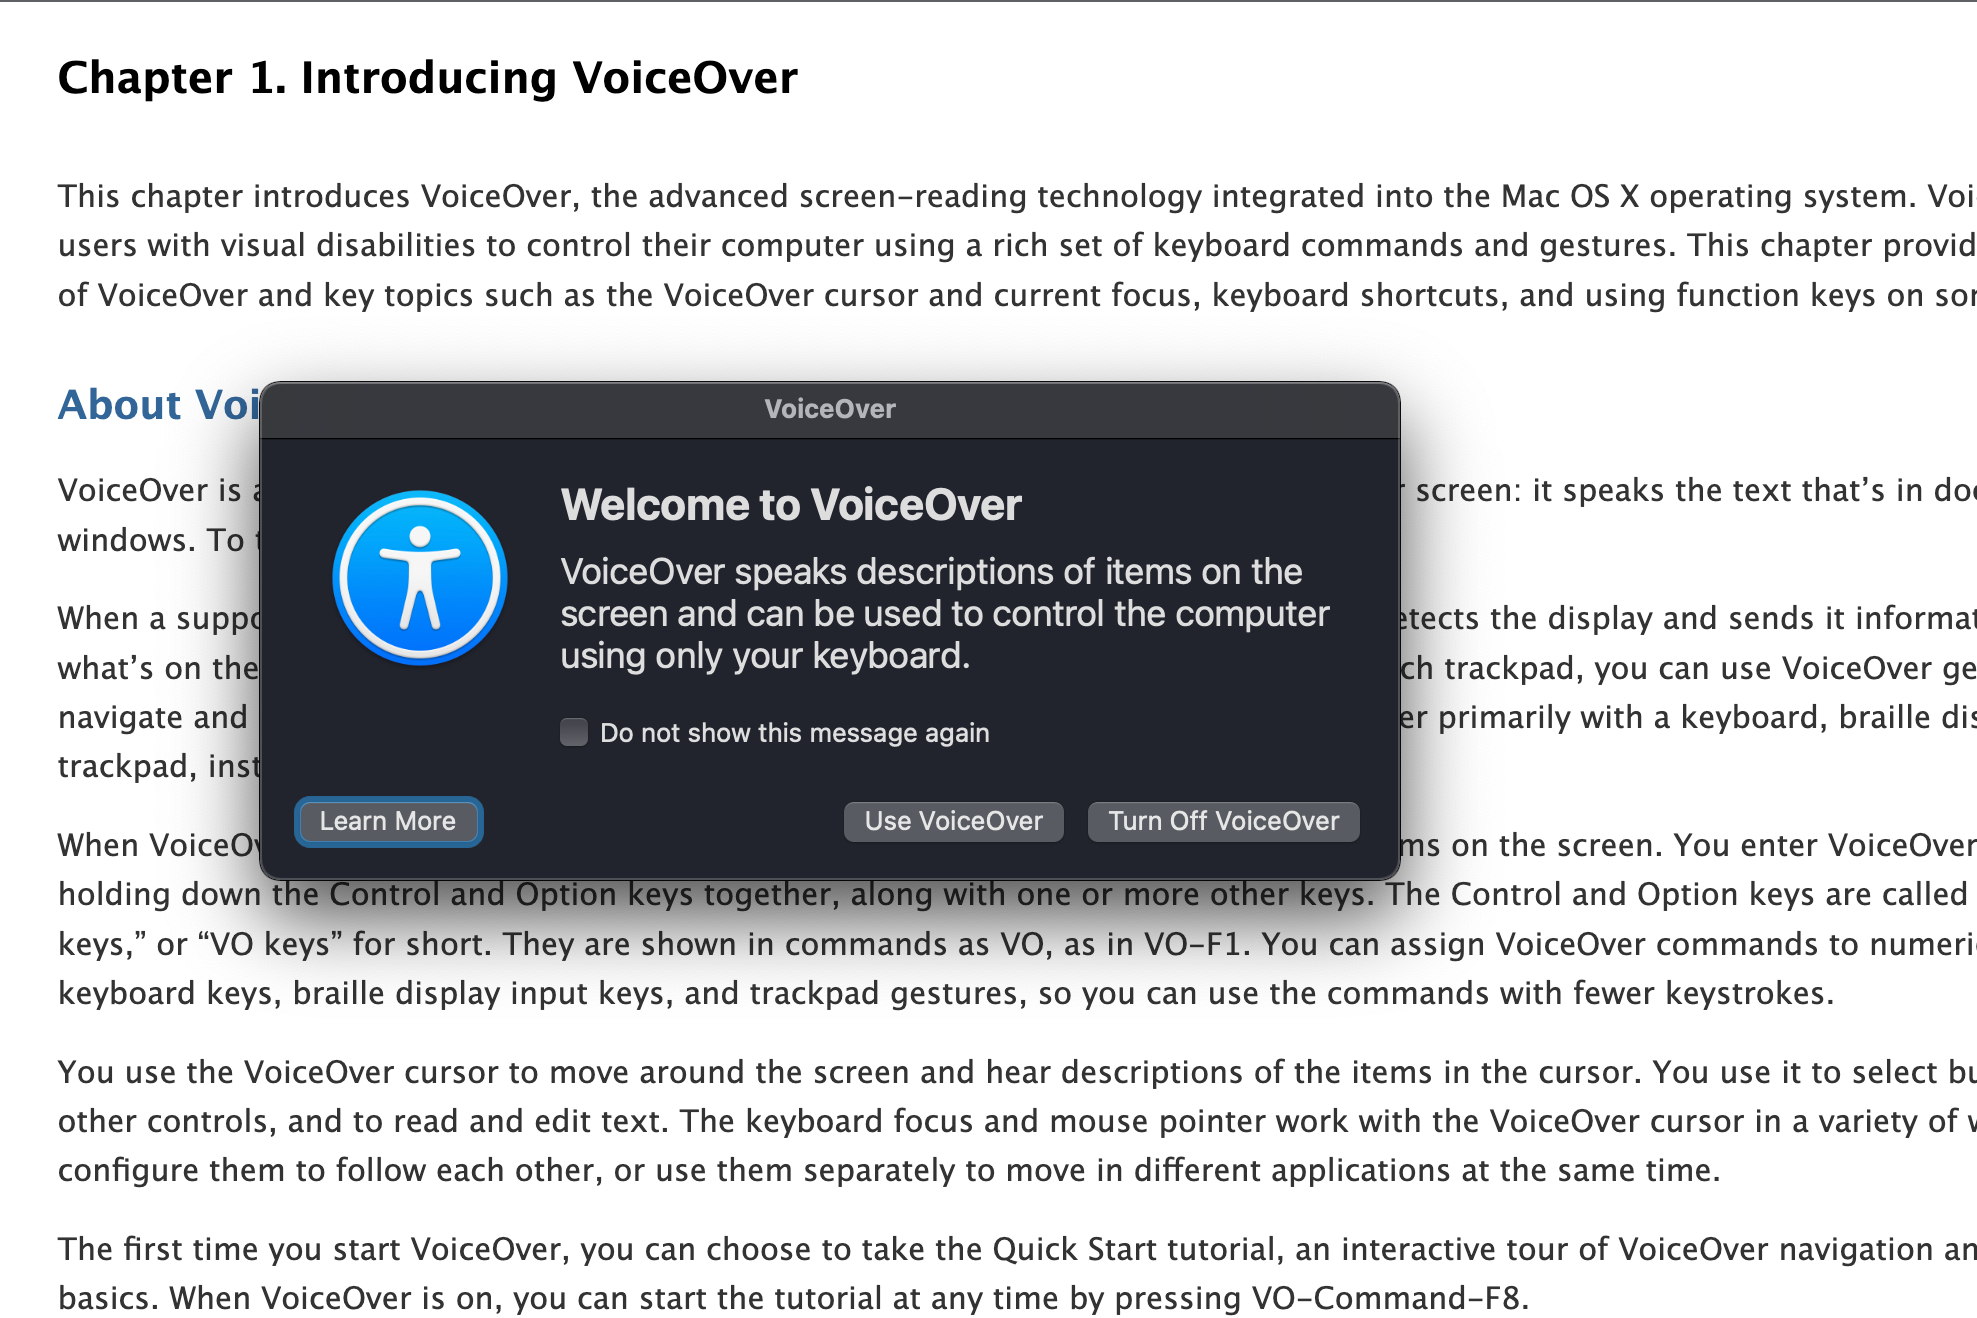 La ventana emergente de activación de VoiceOver.